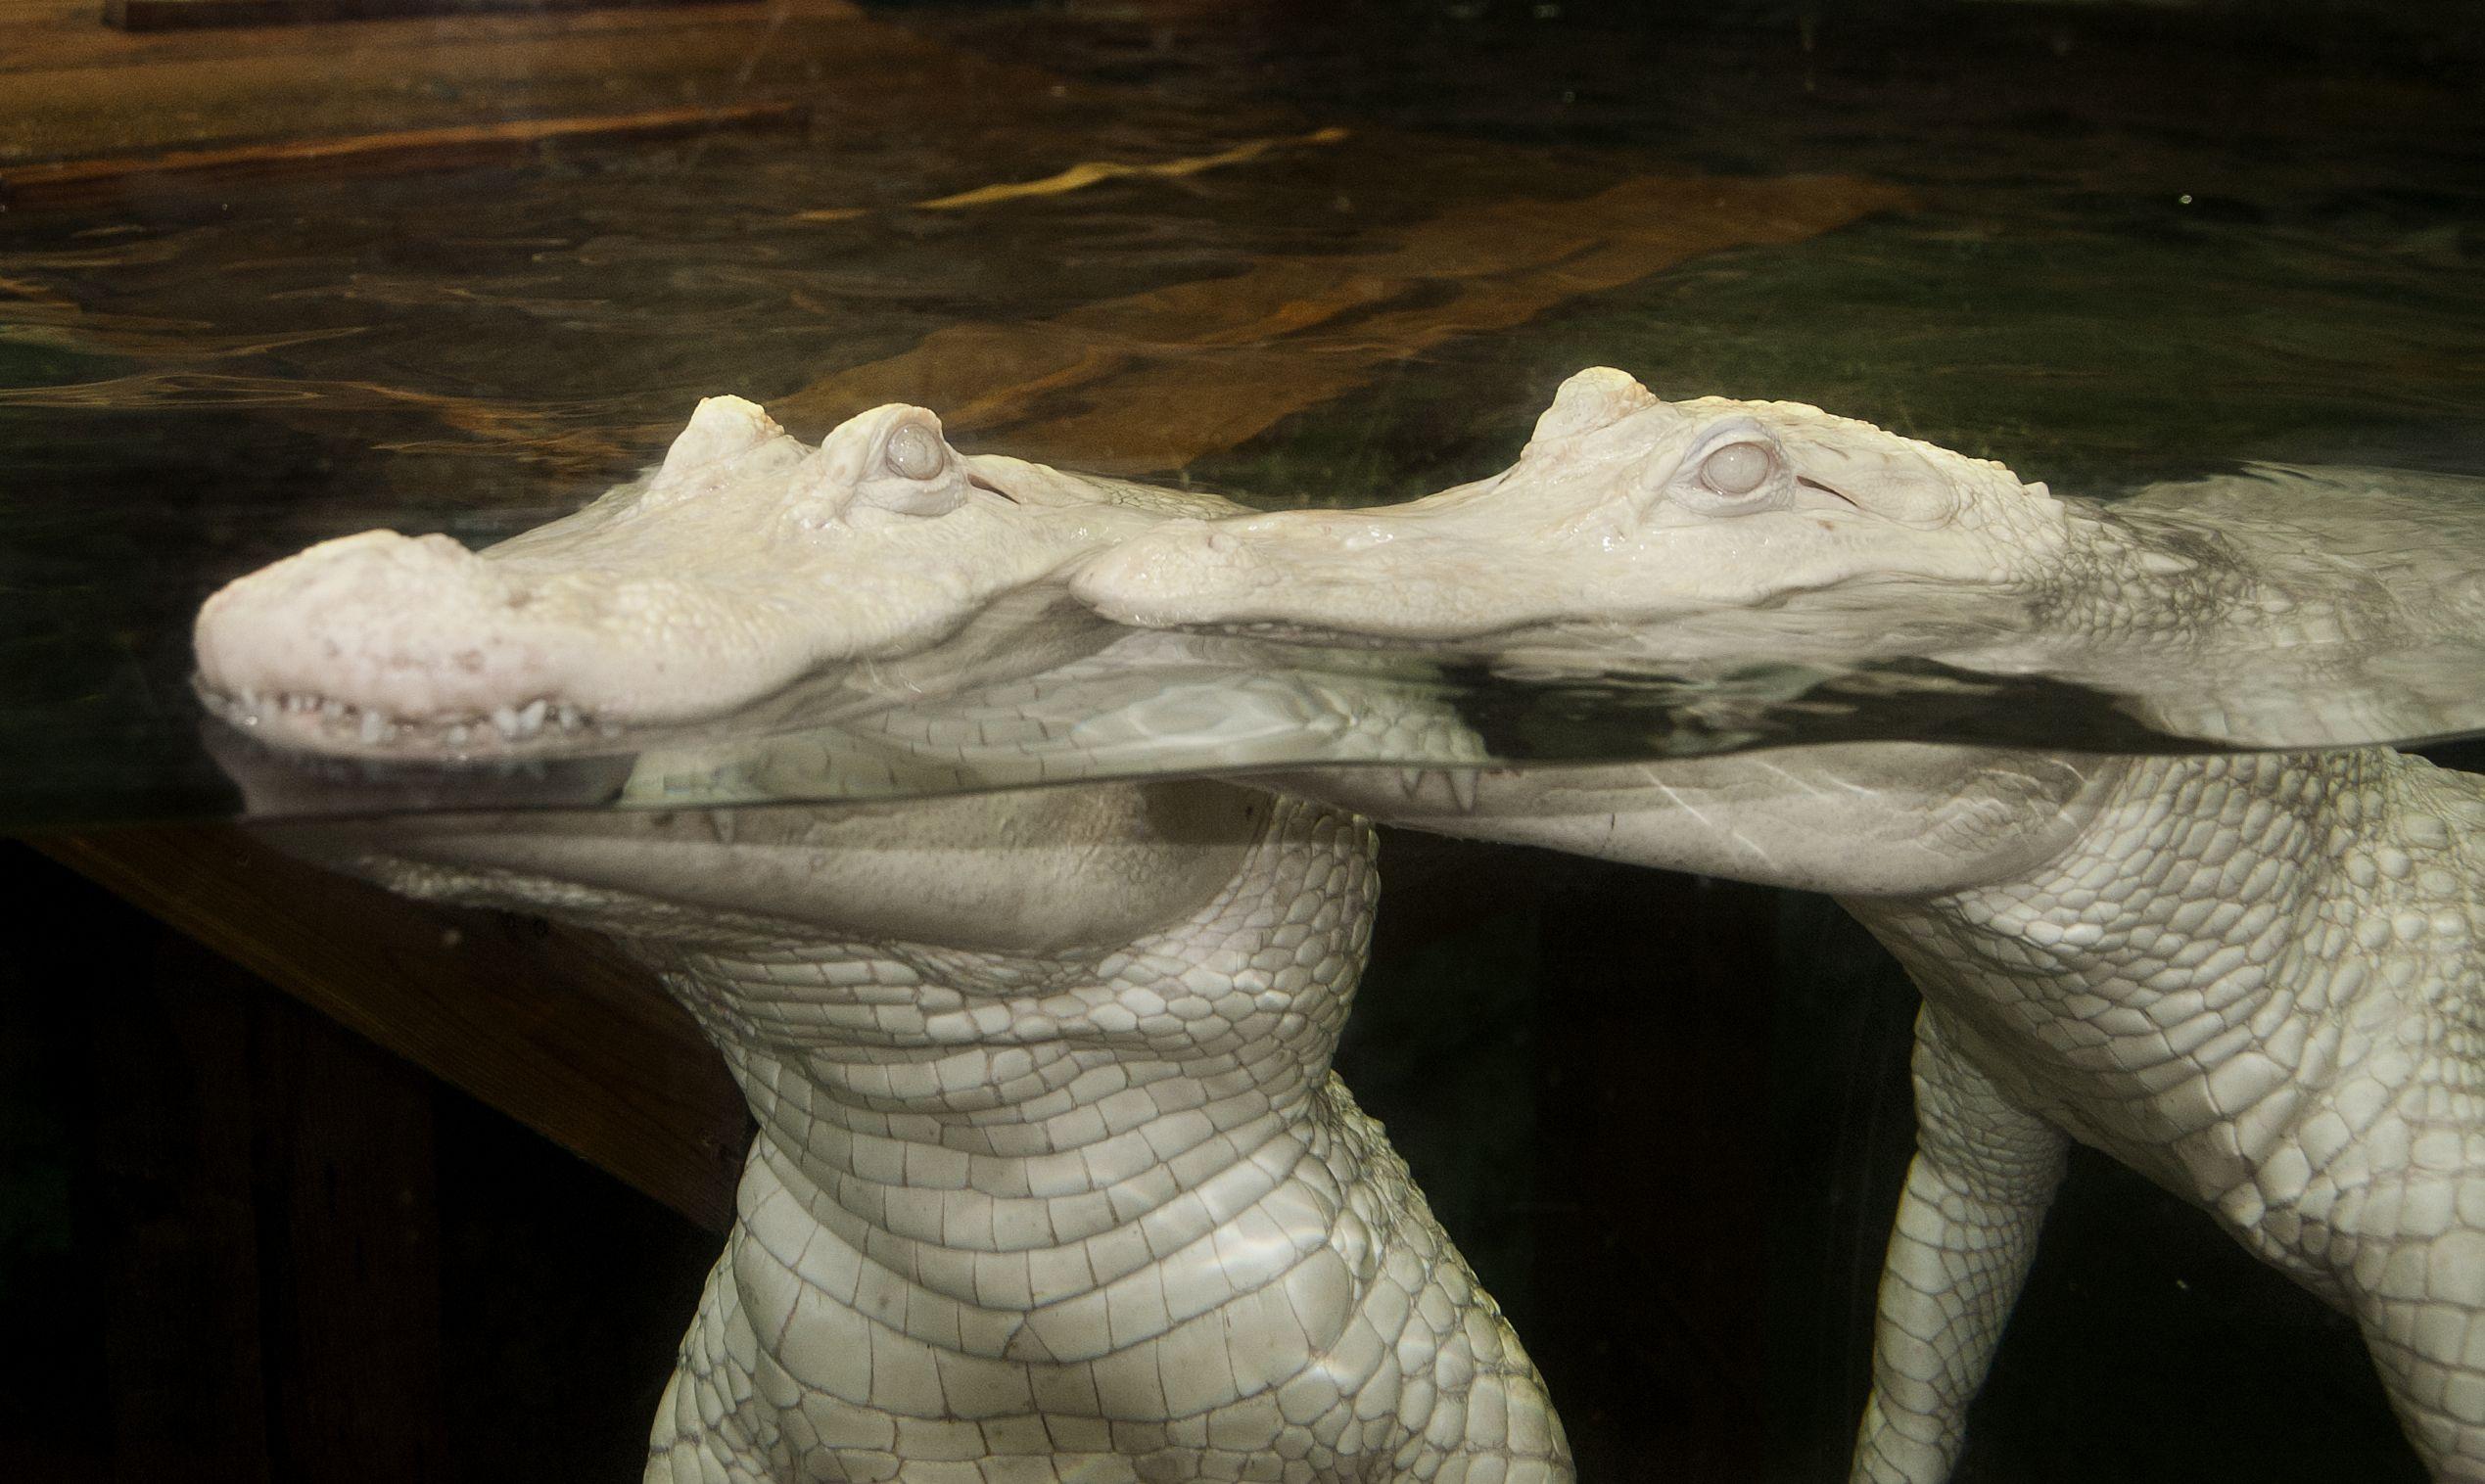 albino alligators